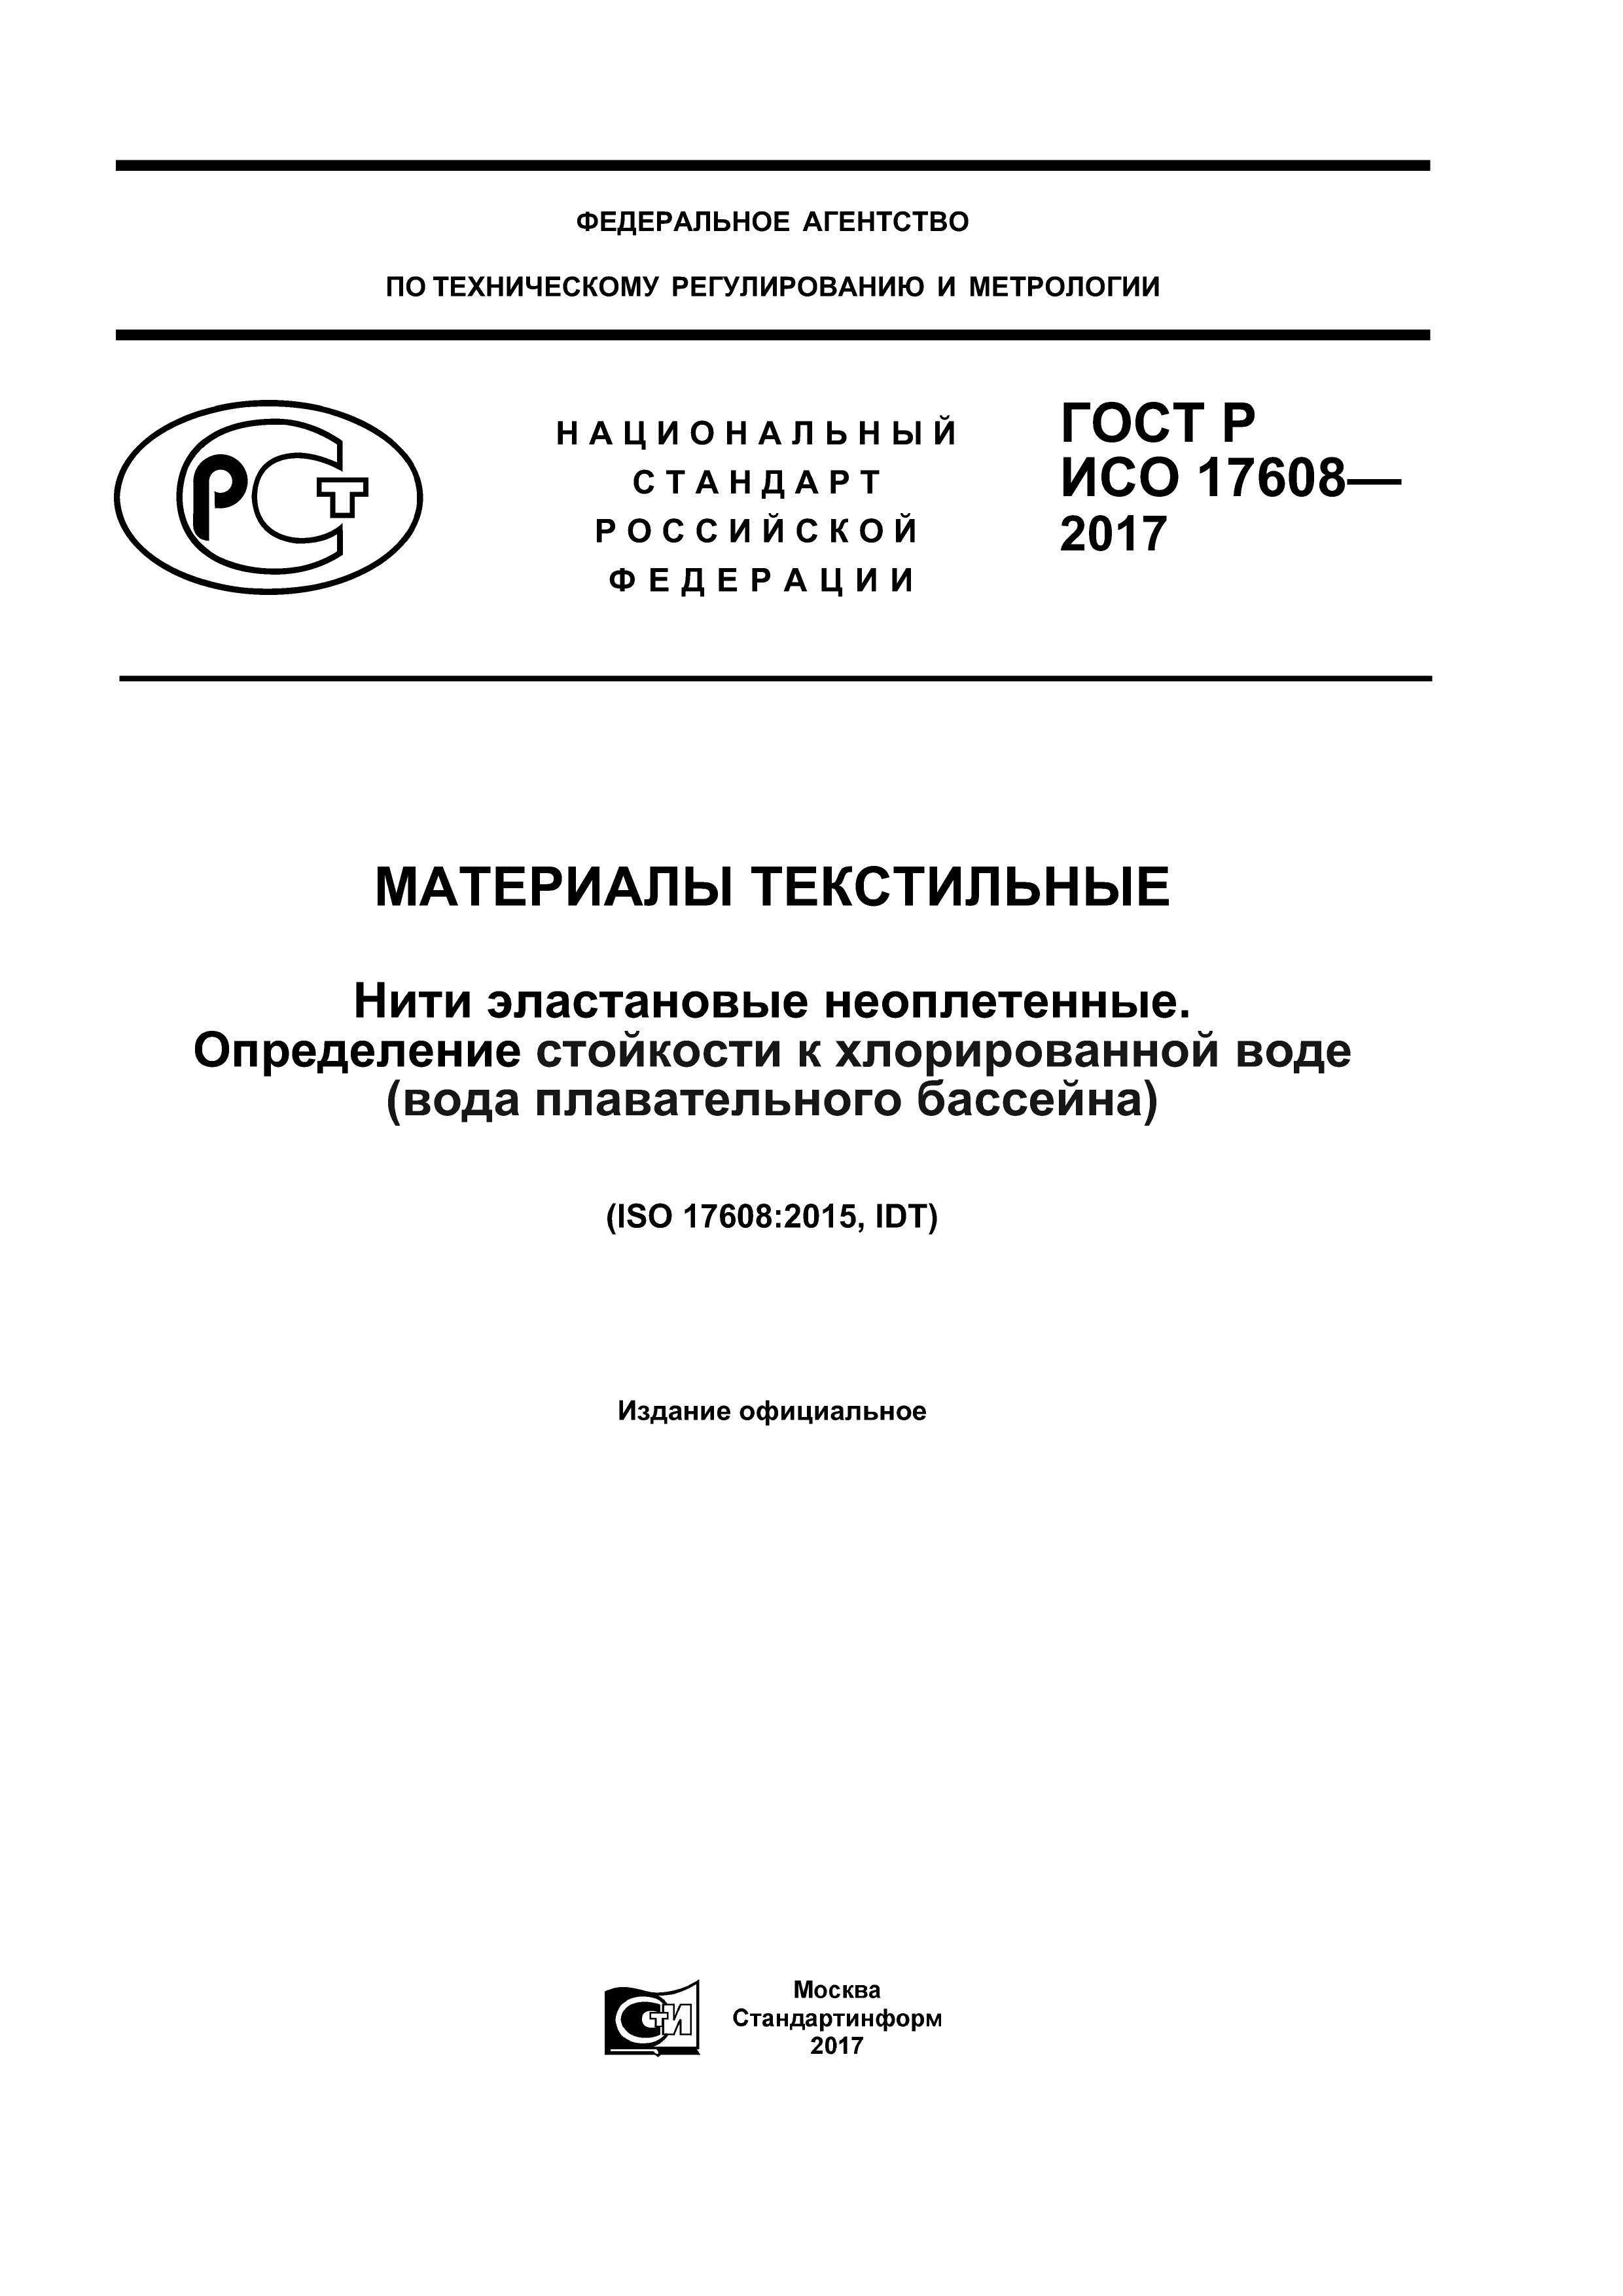 ГОСТ Р ИСО 17608-2017